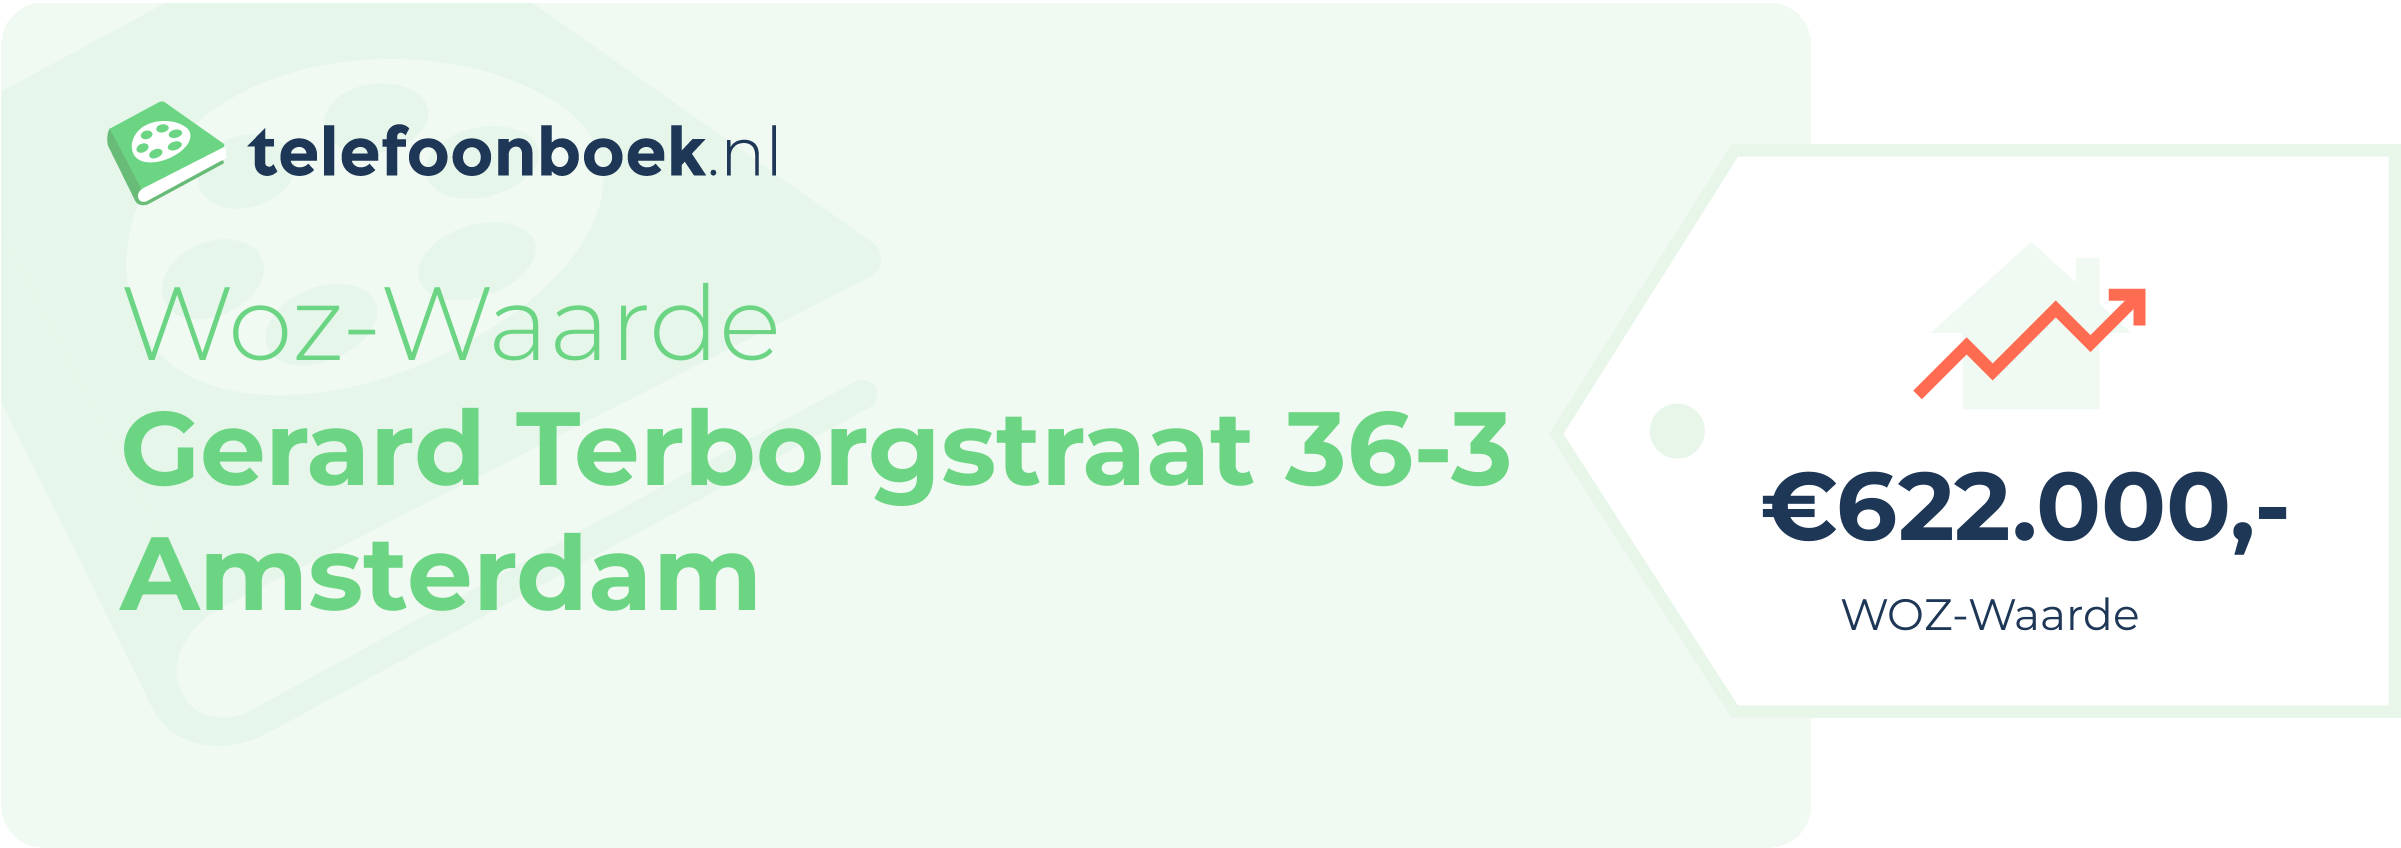 WOZ-waarde Gerard Terborgstraat 36-3 Amsterdam